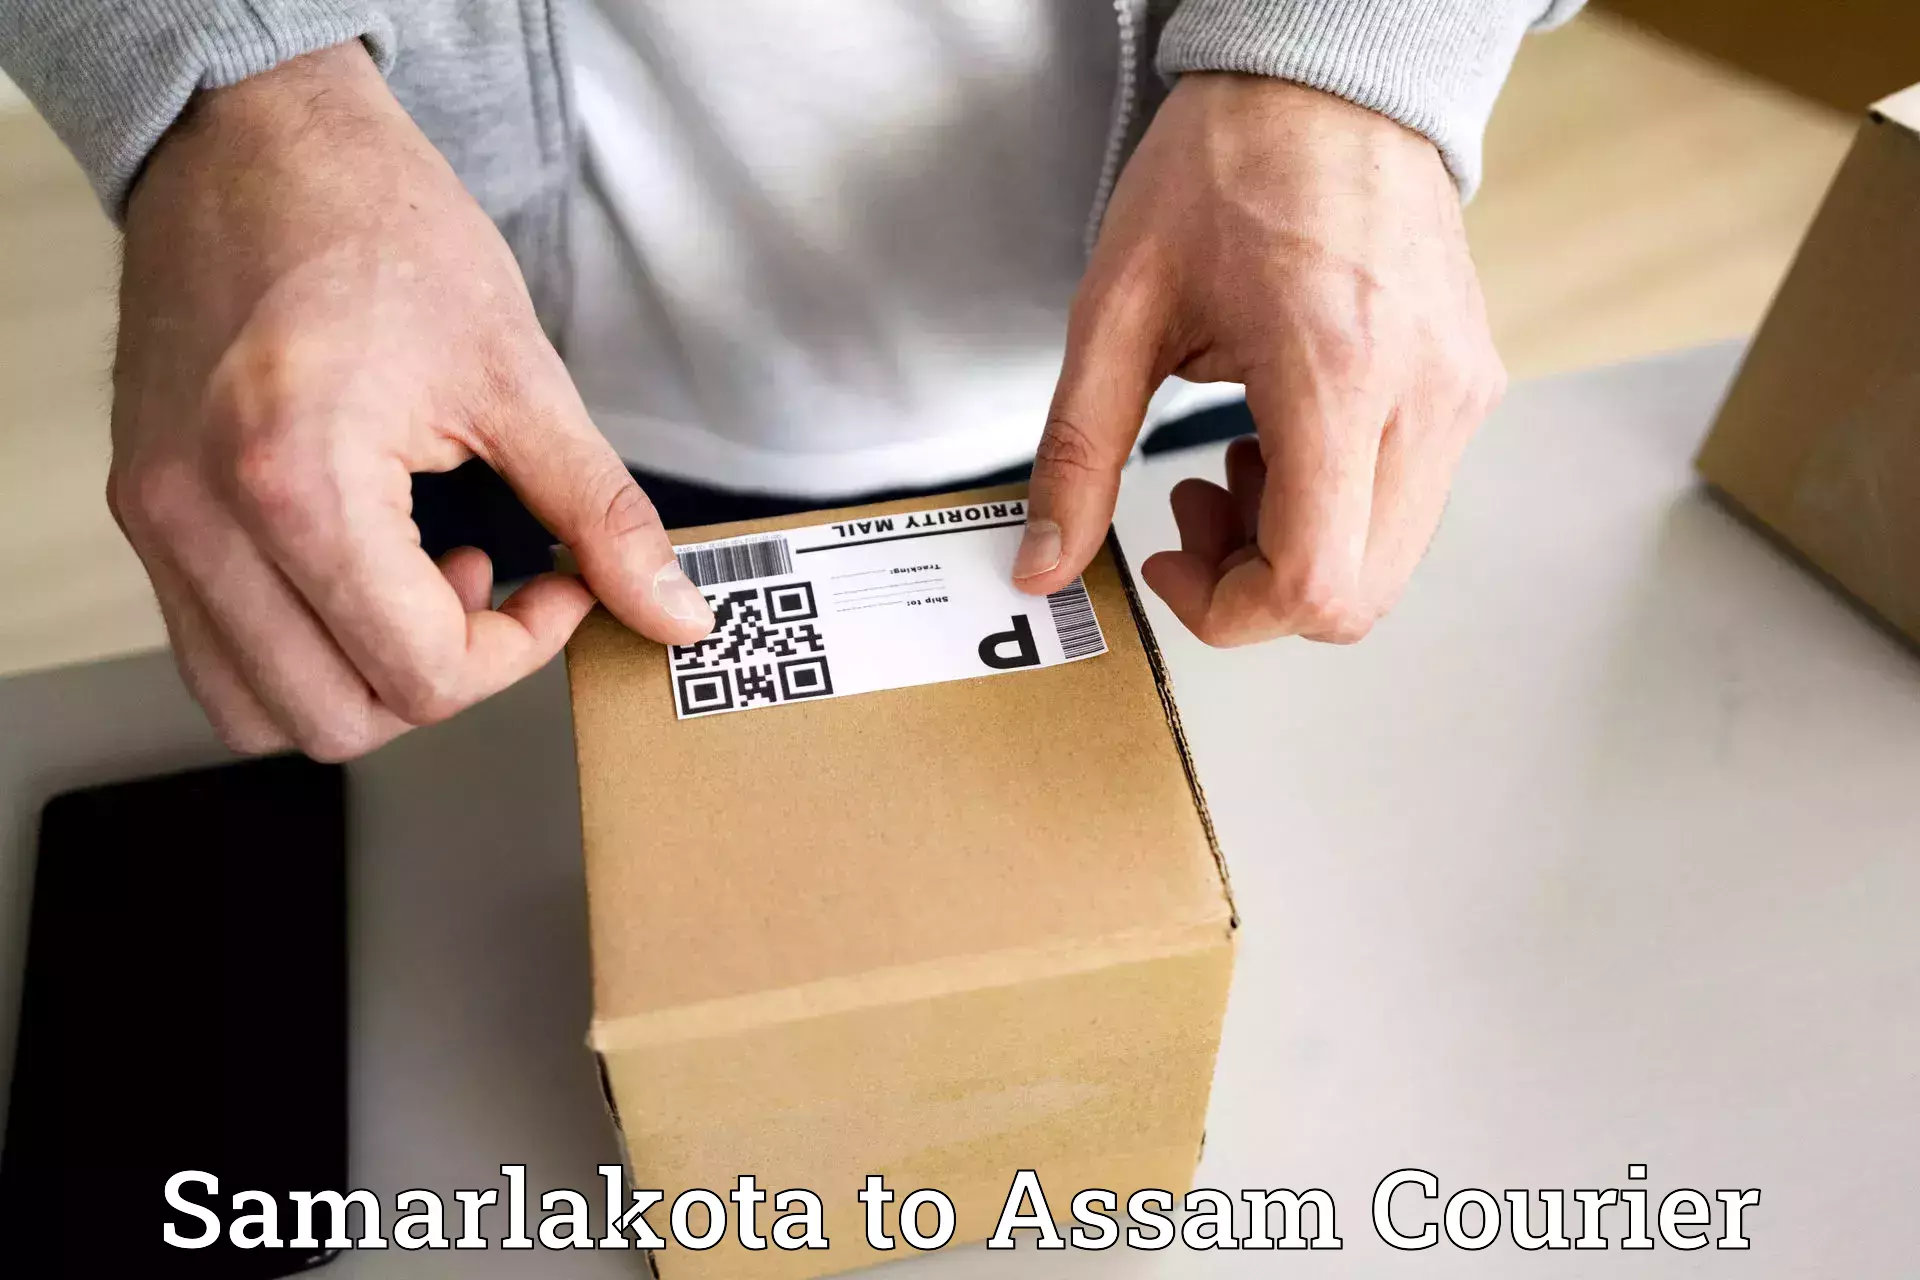 Sustainable courier practices Samarlakota to Dalgaon